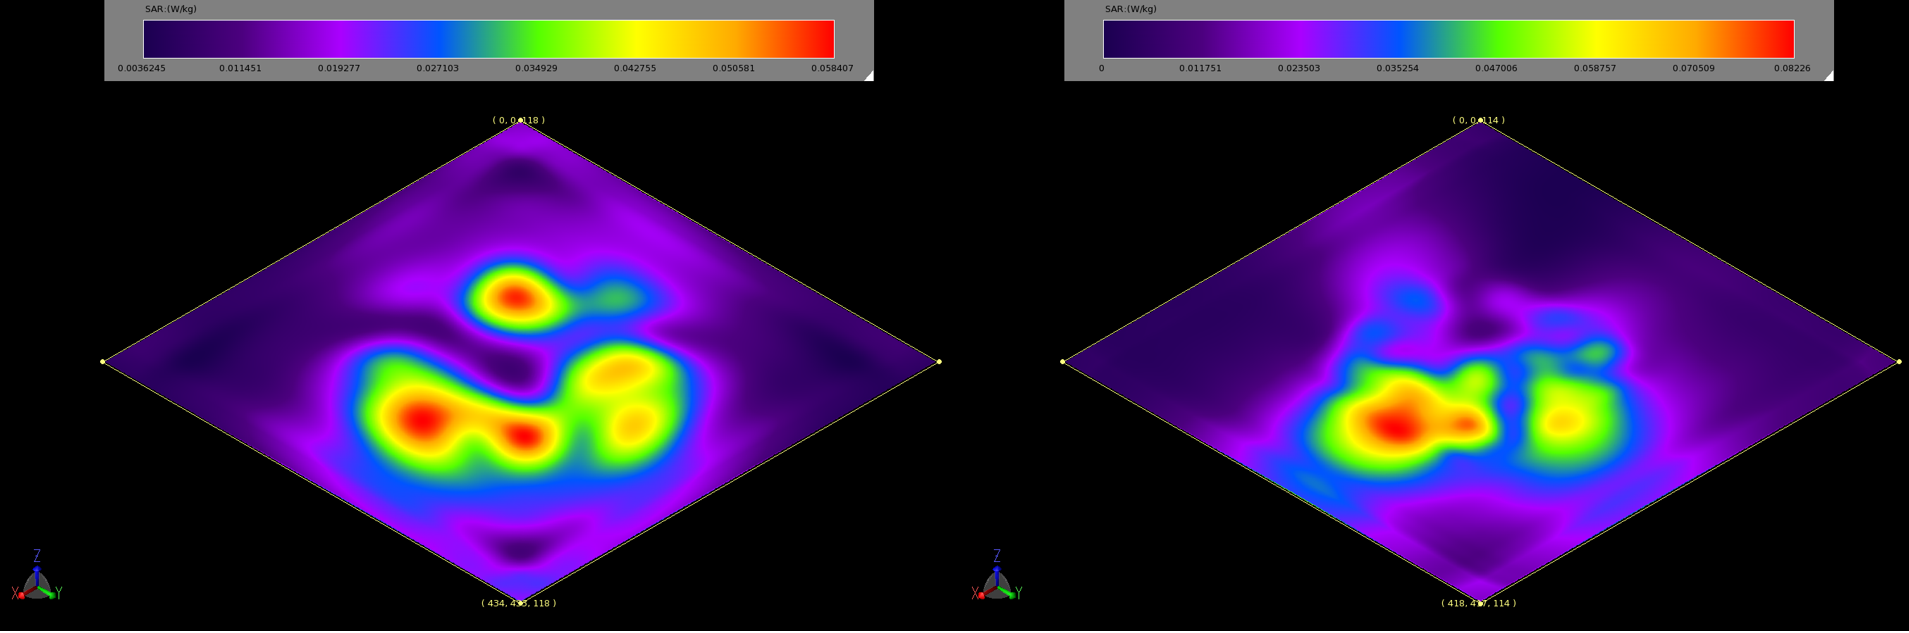 Abbildung 6: Die über 10 g gemittelten SAR-Diagramme bei 2,45 GHz (links, 6a) und 5,5 GHz (rechts, 6b) zeigen die Regionen mit der höchsten Leistungsabsorption im Phantom. Die Werte gelten für eine Eingangsleistung von 0,5 W und liegen deutlich unter den zulässigen Normen.